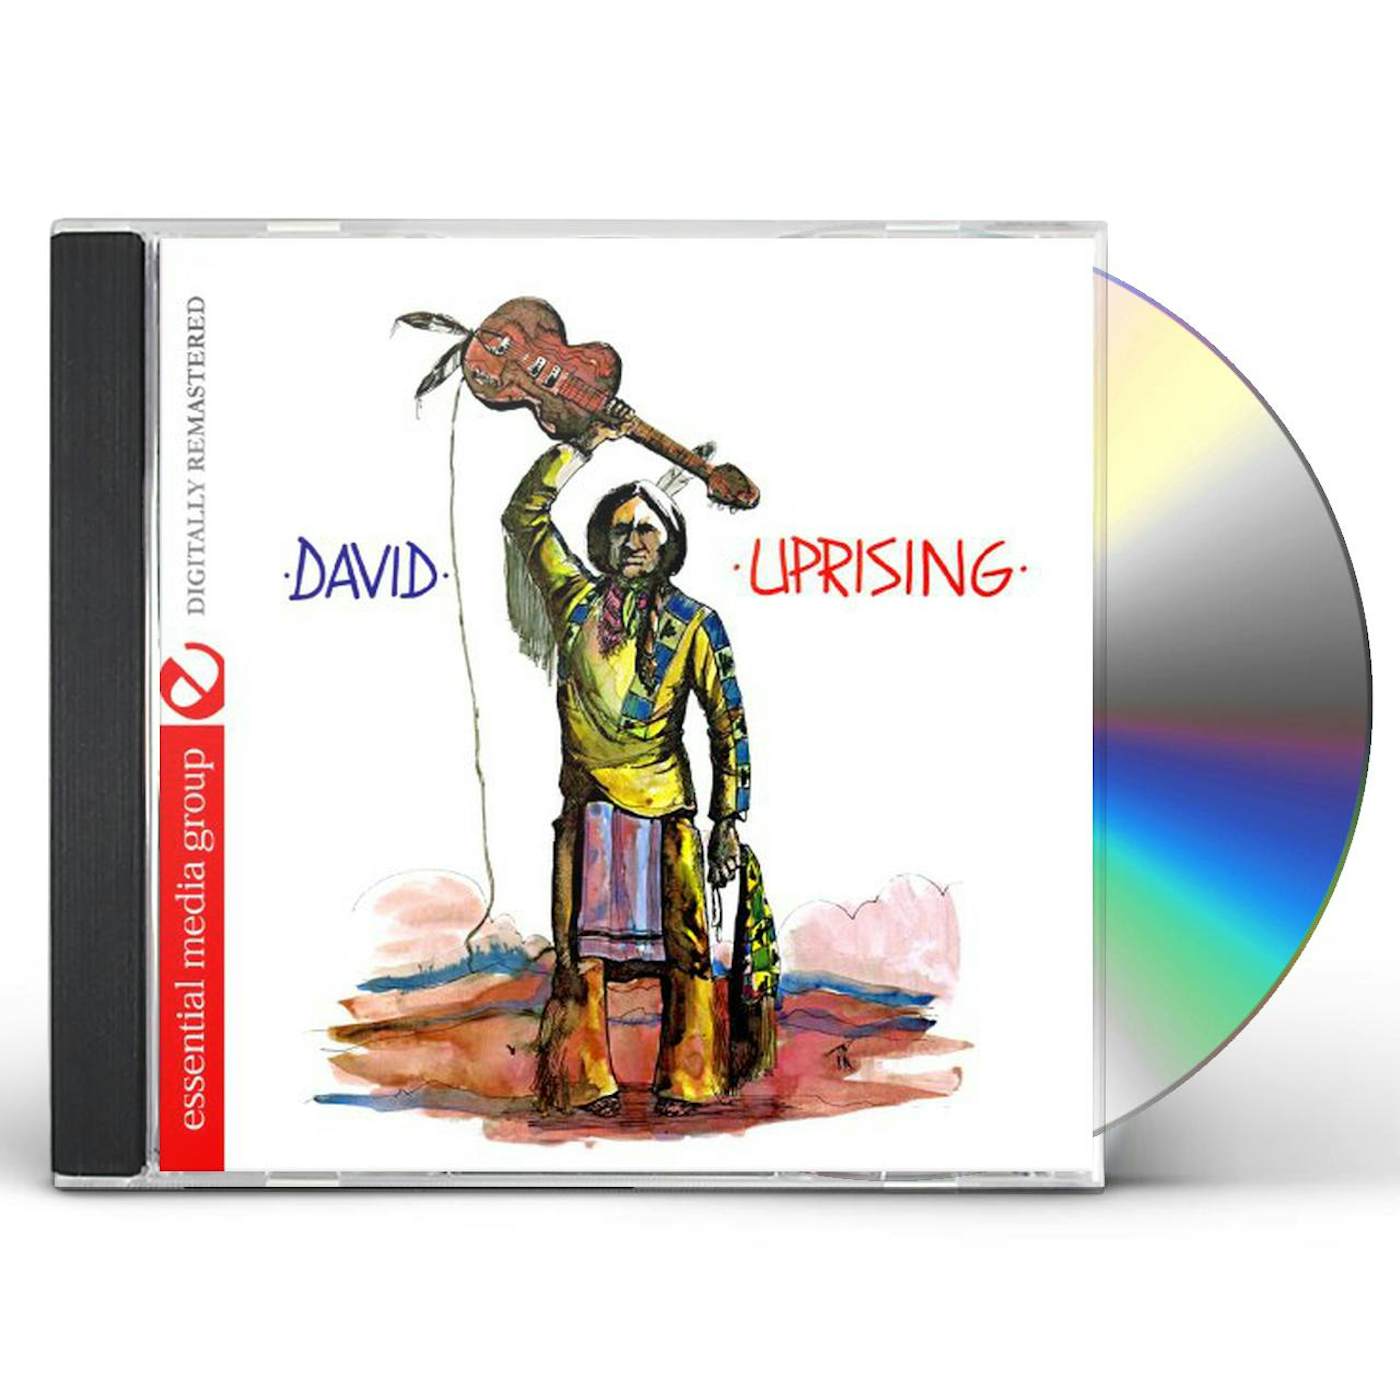 David UPRISING CD